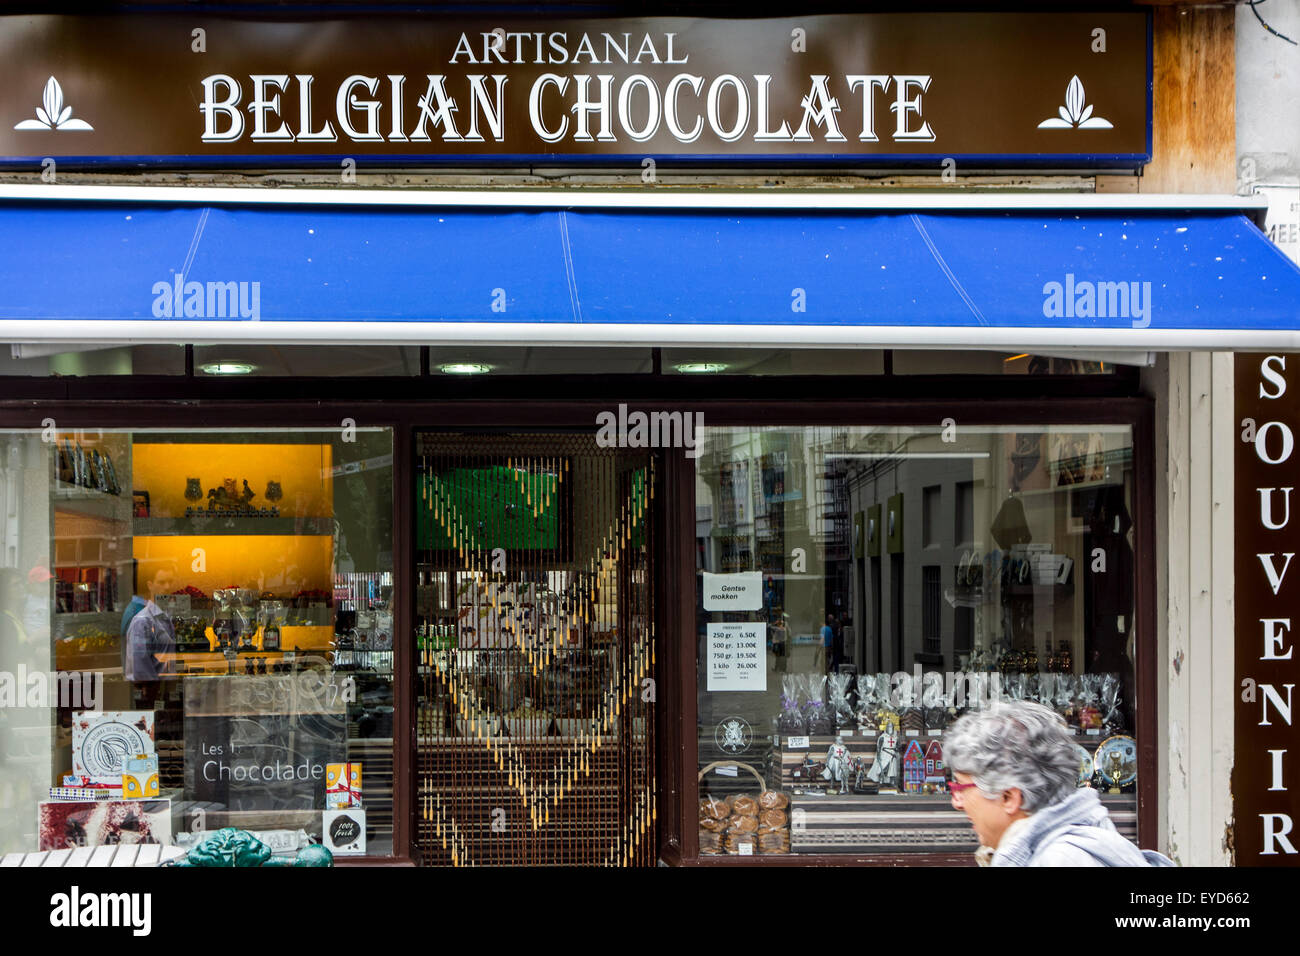 Le Chocolatier chocolat belge artisanal boutique vendant des variétés de pralines et confiserie Banque D'Images